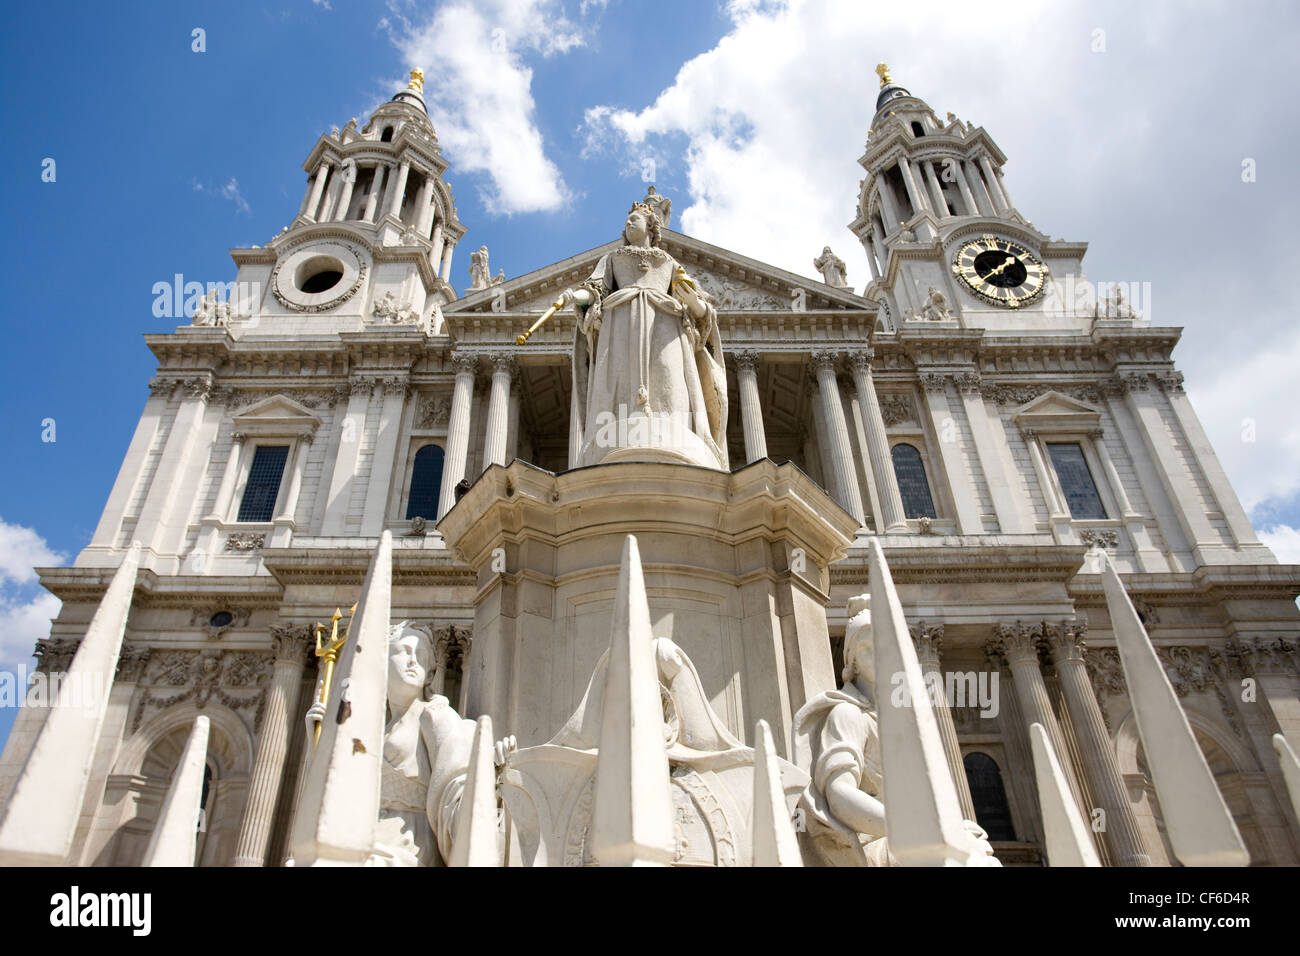 Eine Statue von Königin Anne vor St Pauls Cathedral zeigt, dass sie Monarch zum Zeitpunkt war die Kathedrale Dienstlei Stockfoto